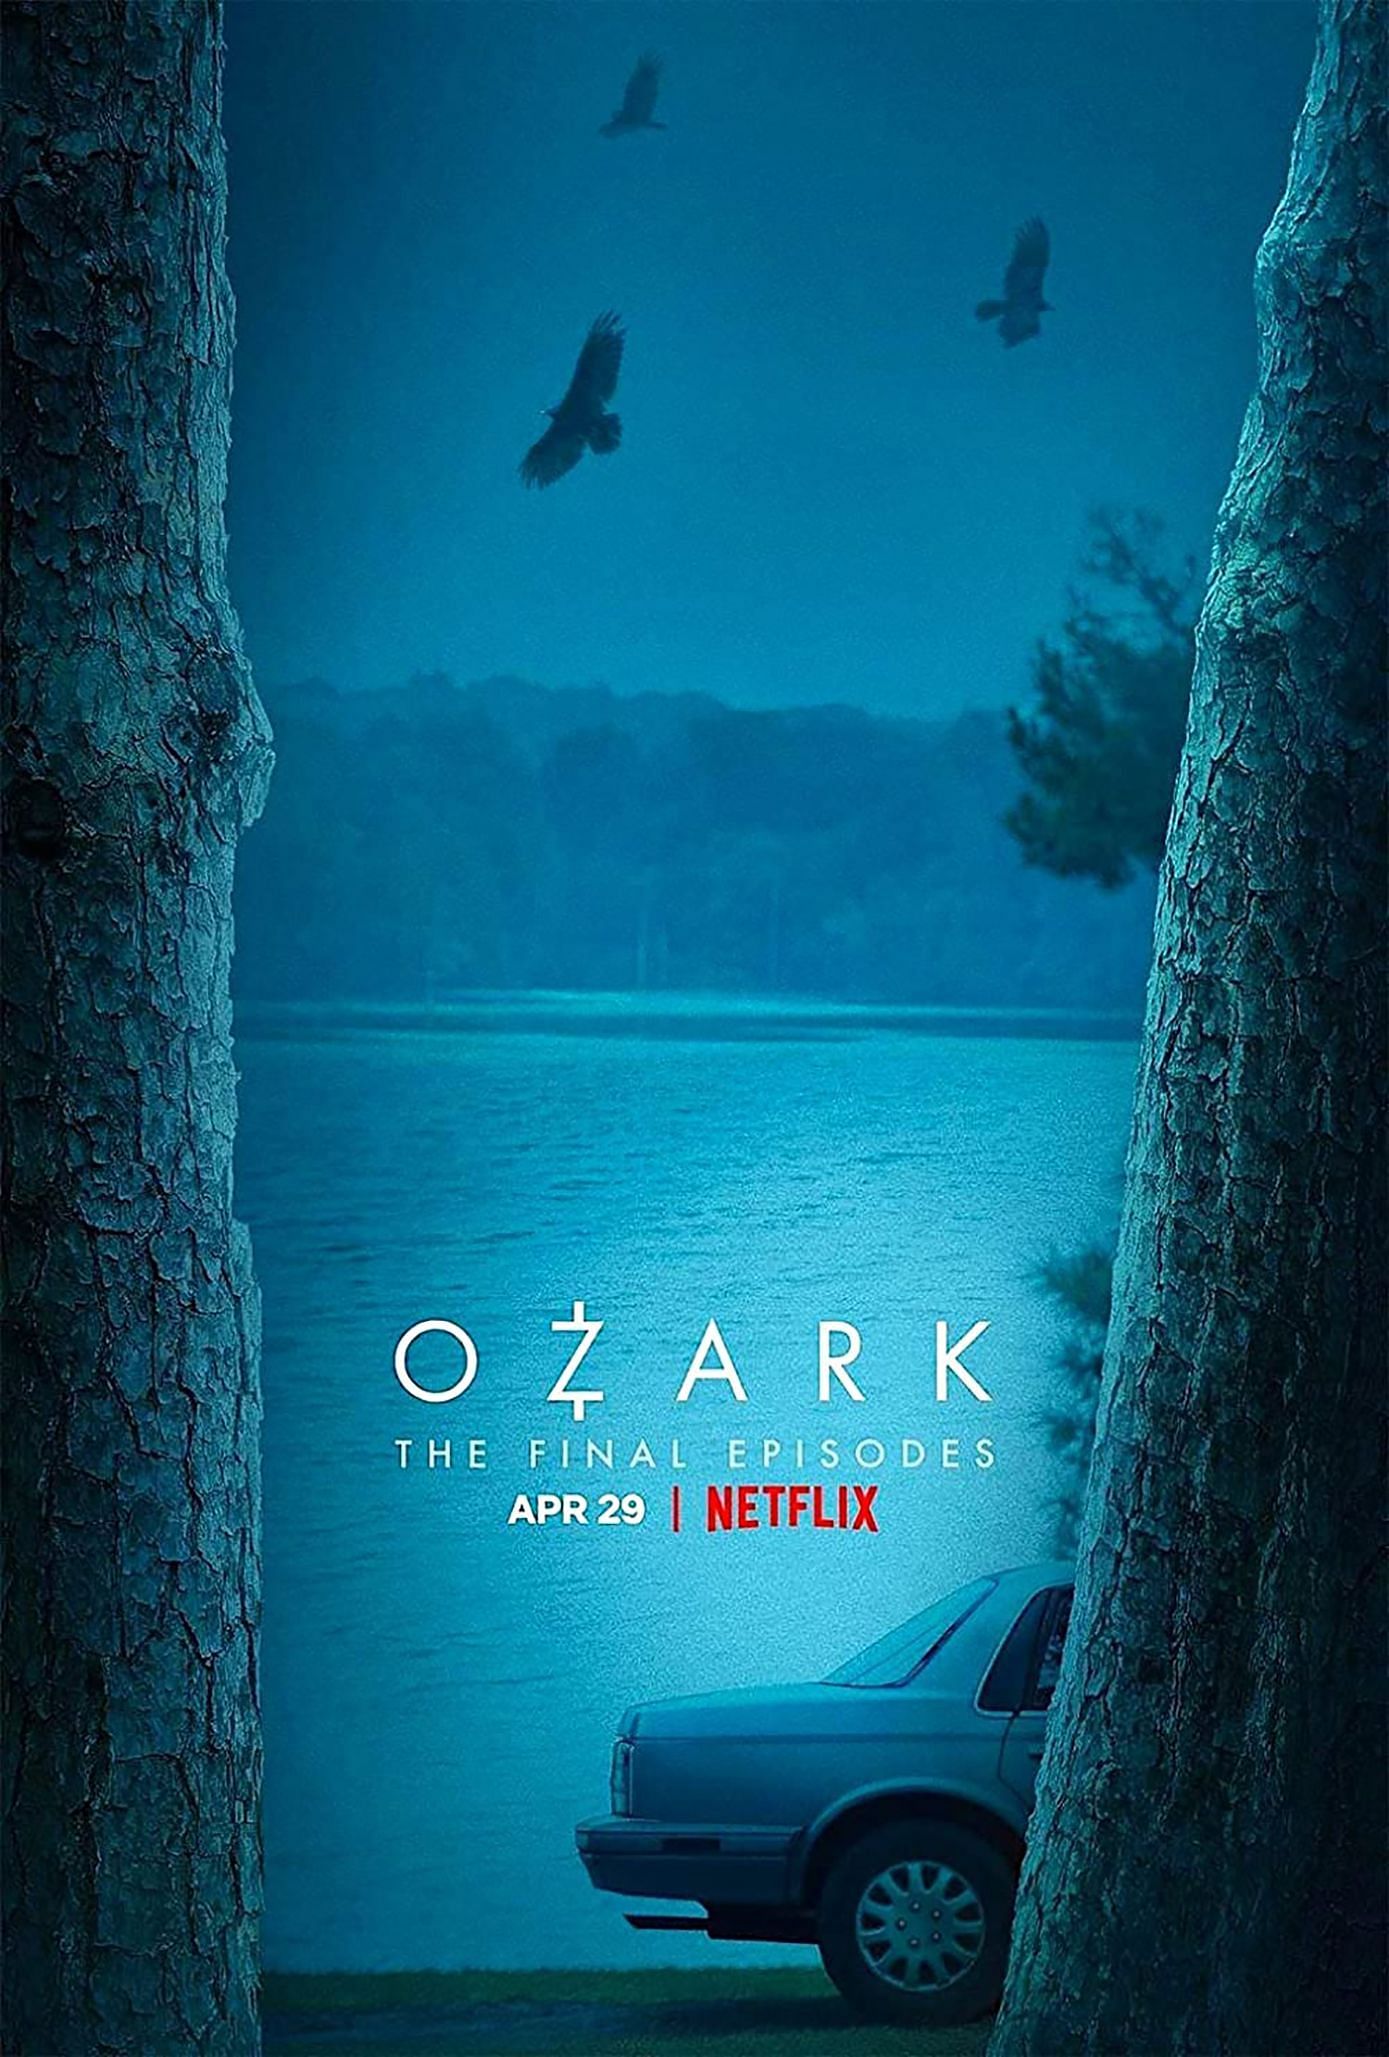 Ozark (Imagen a través de Netflix)